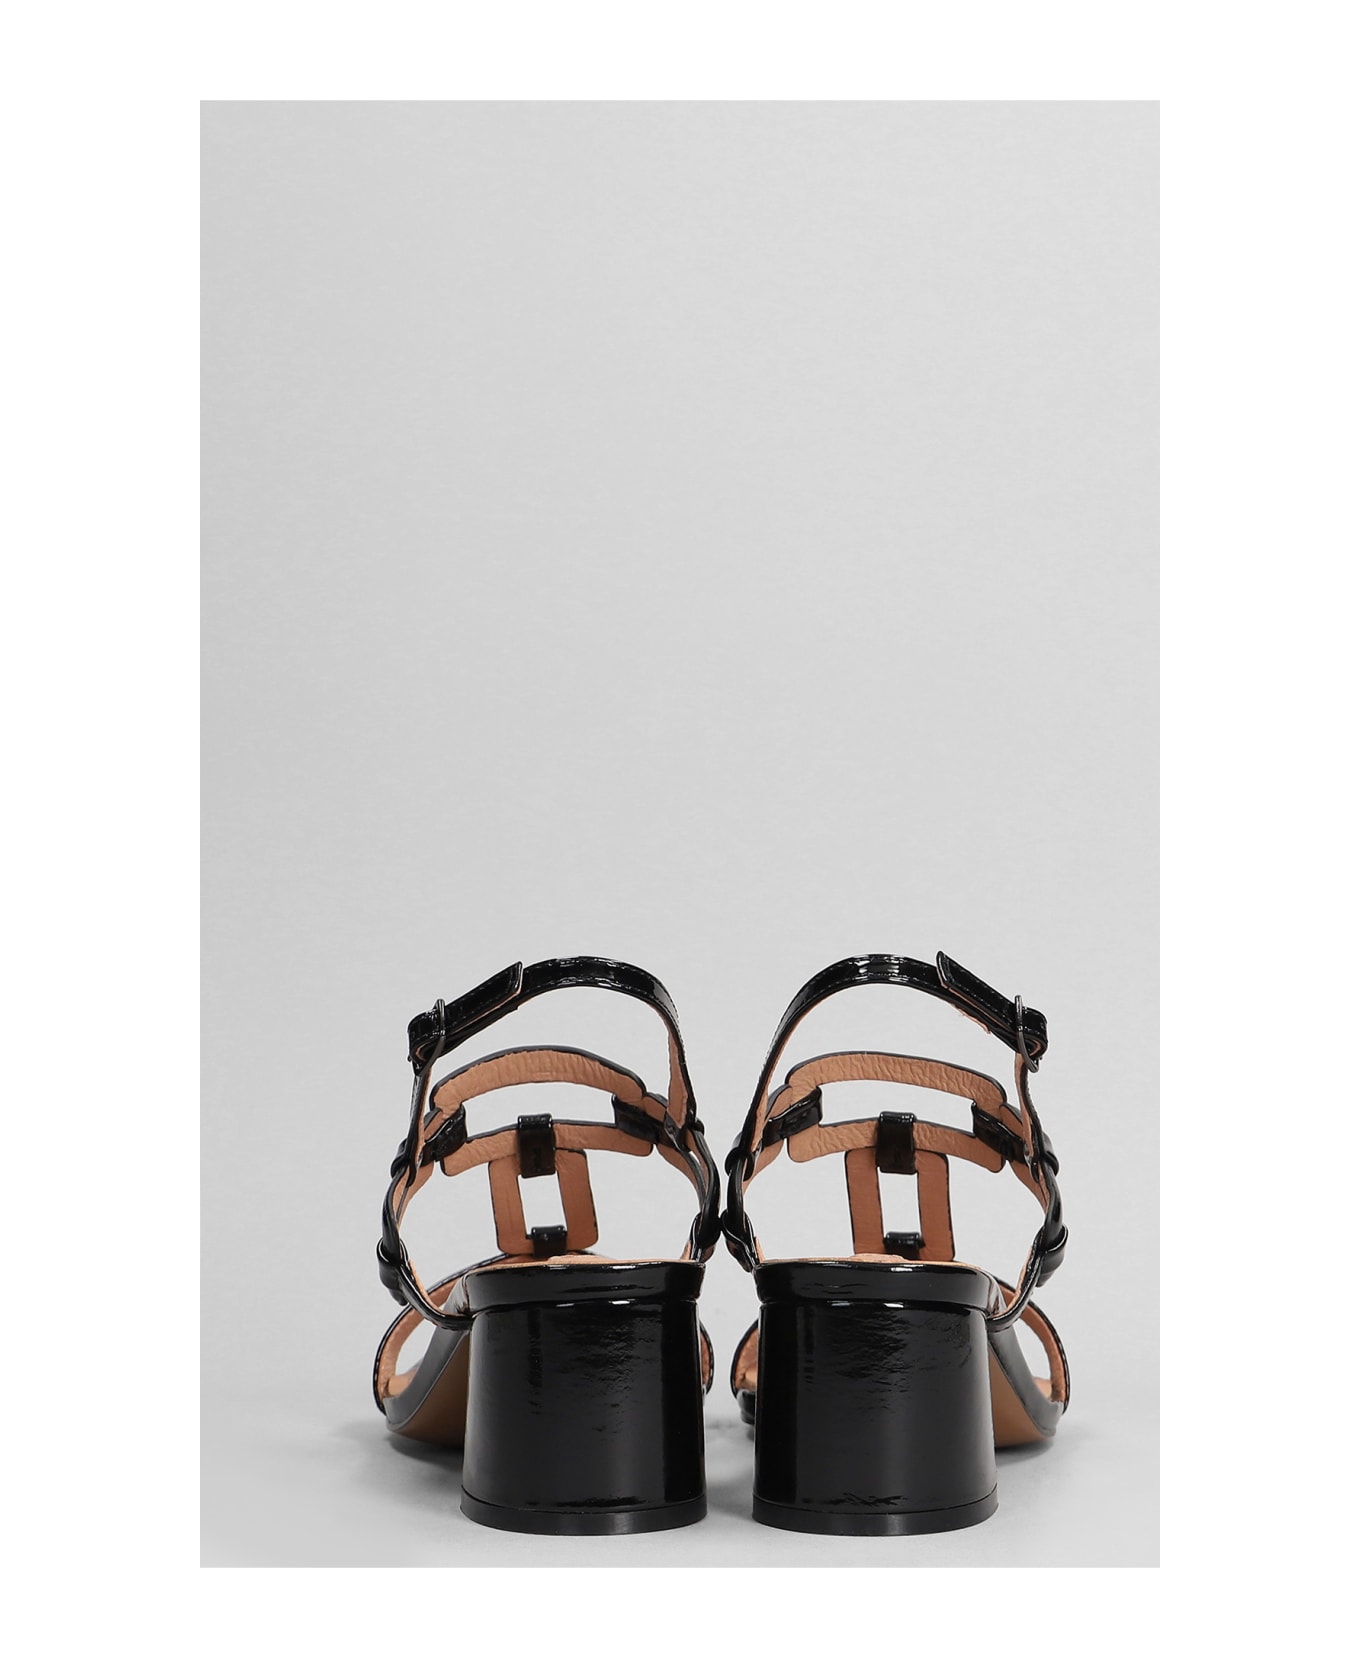 Bibi Lou Zinnia 50 Sandals In Black Patent Leather - black